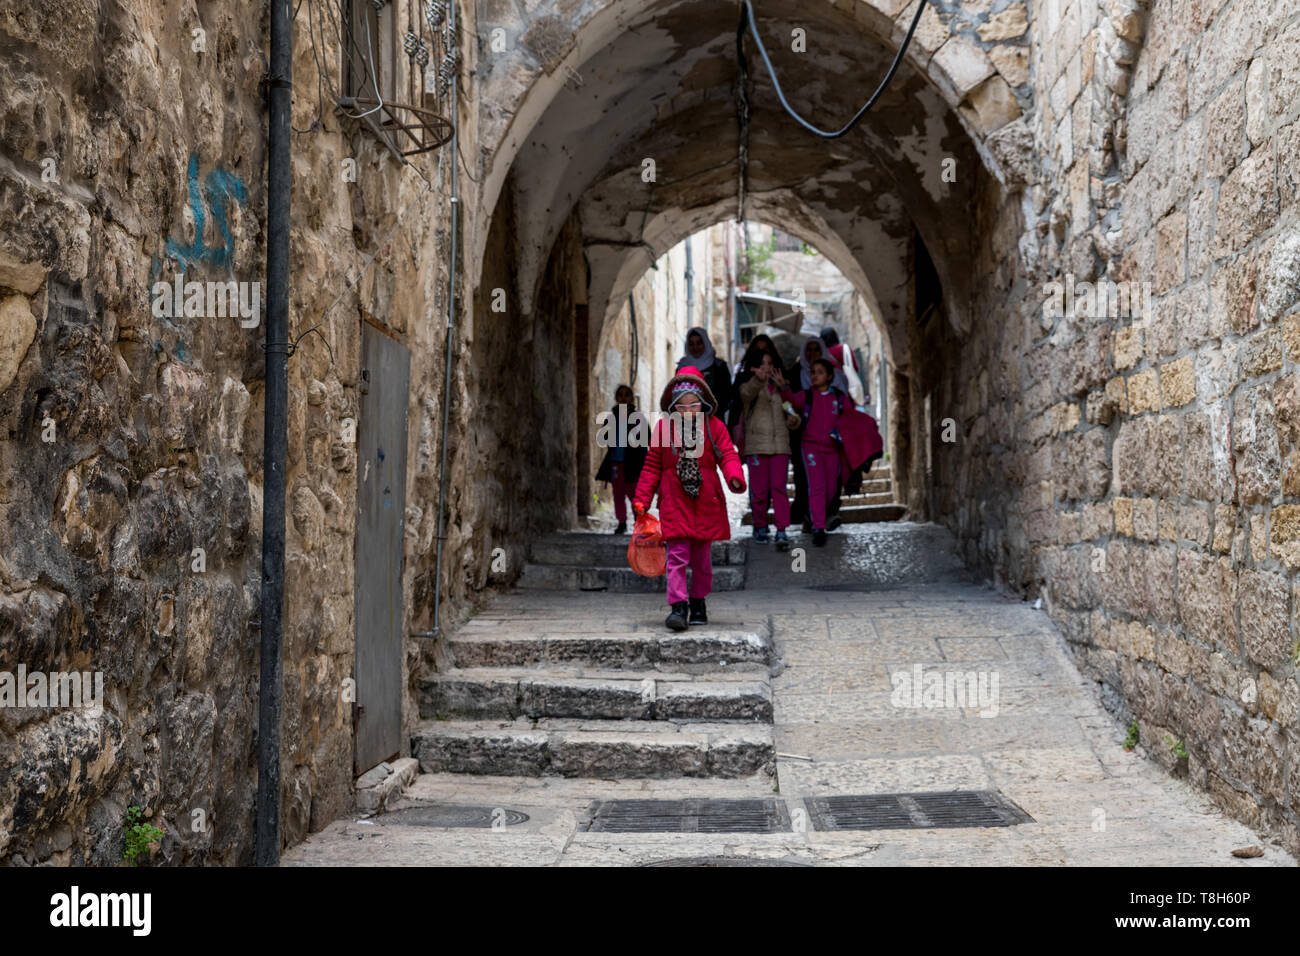 Jérusalem, Israël,27-mars-2019:les enfants marcher dans la vieille ville de Jérusalem, la vieille ville est divisée en quatre quartiers Banque D'Images